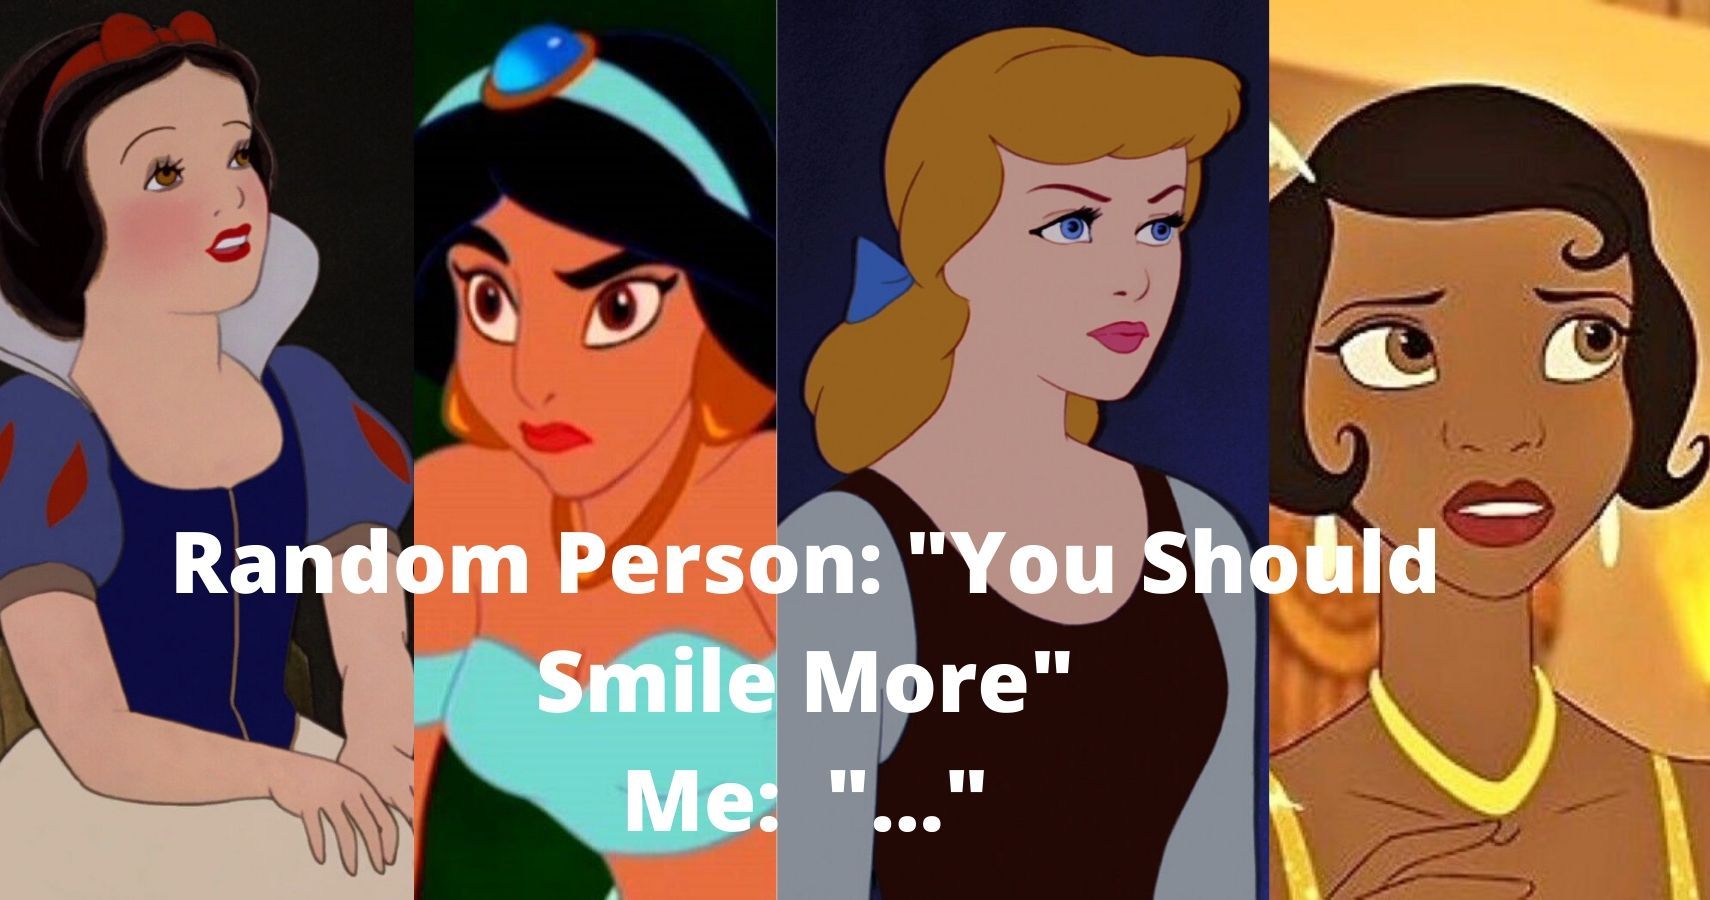 10 Hilarious Disney Fairytale Memes